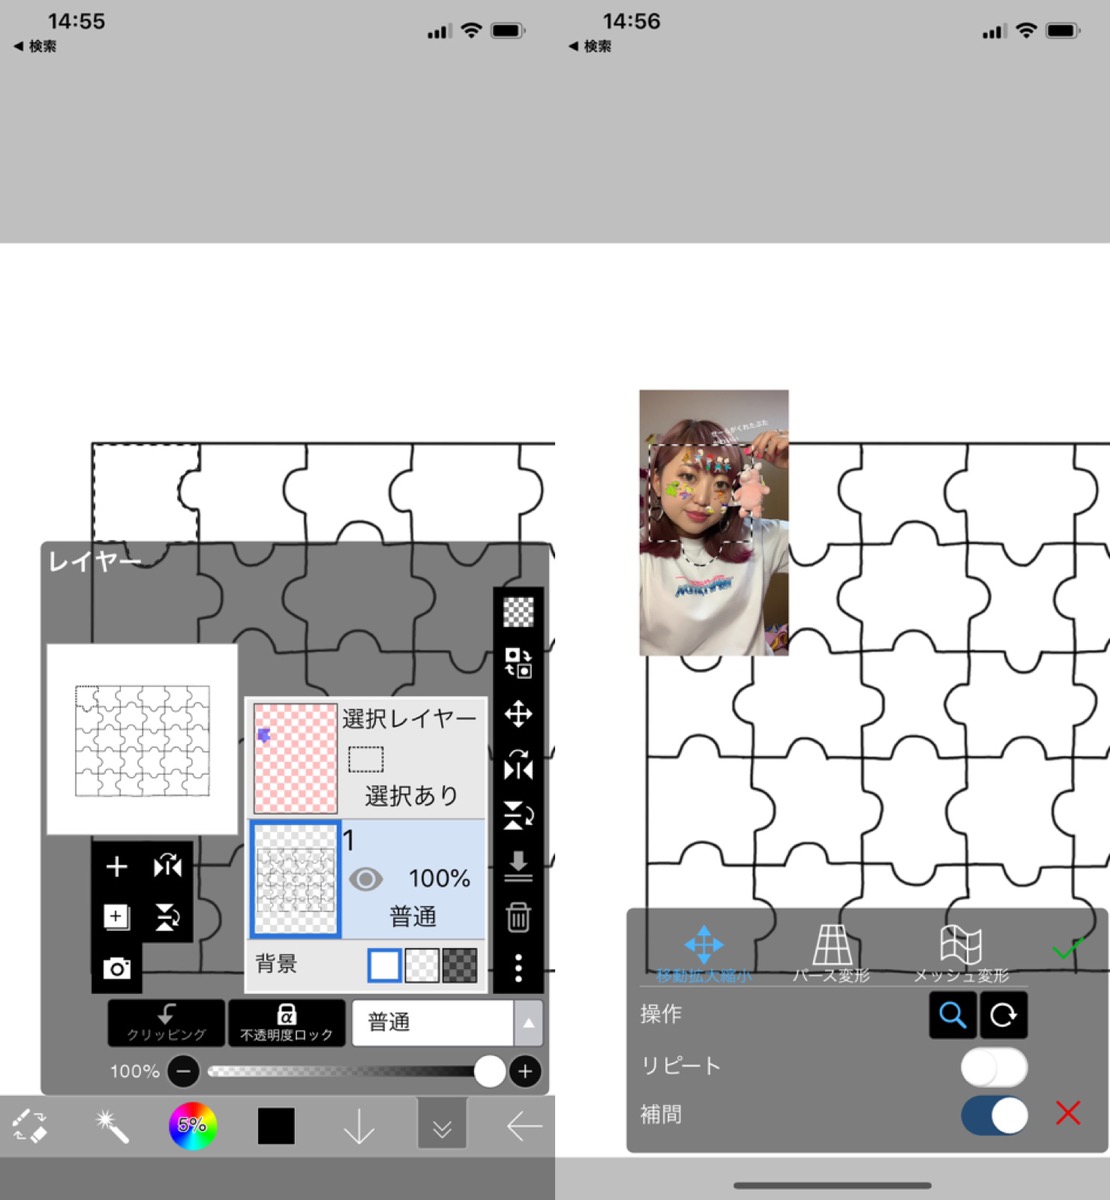 パズル加工のやり方 Picsartで写真や画像をジグソーパズル風に加工する方法 Apptopi